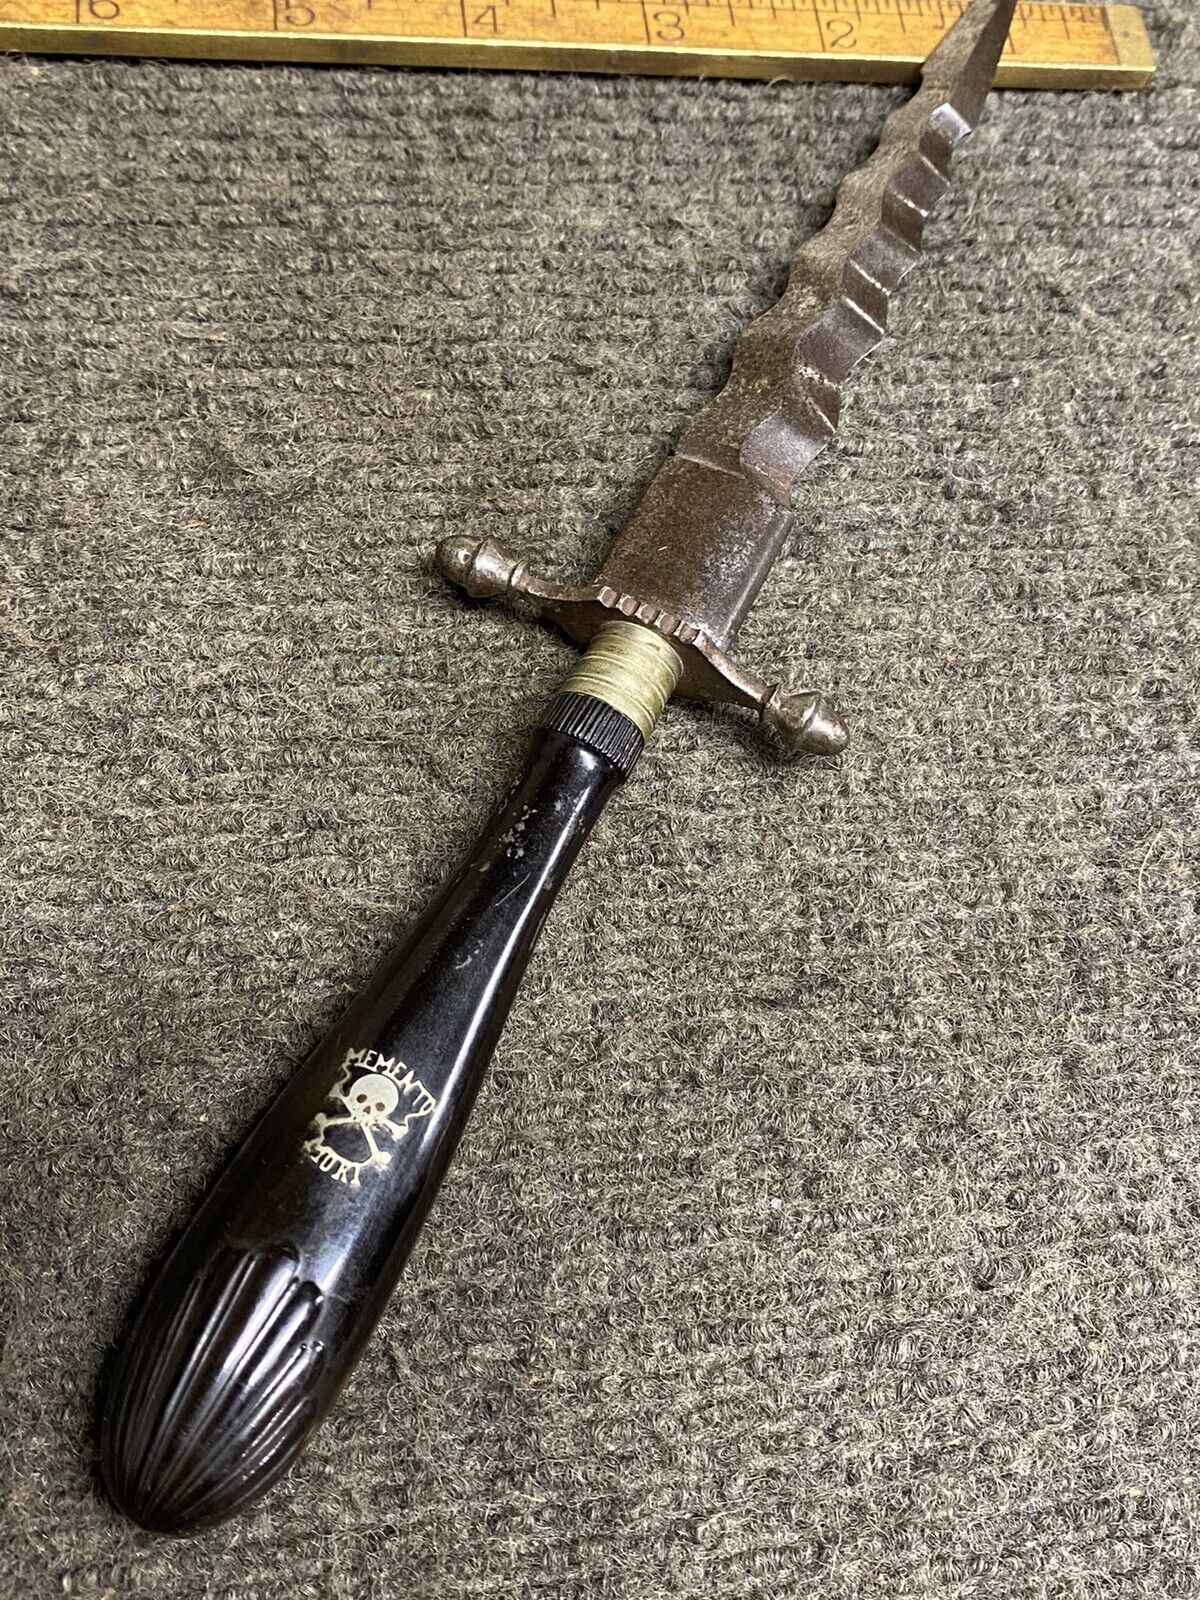 Antique Memento Mori Dagger Knife Skull And Cross Bones 5” Blade Bakelite Handle